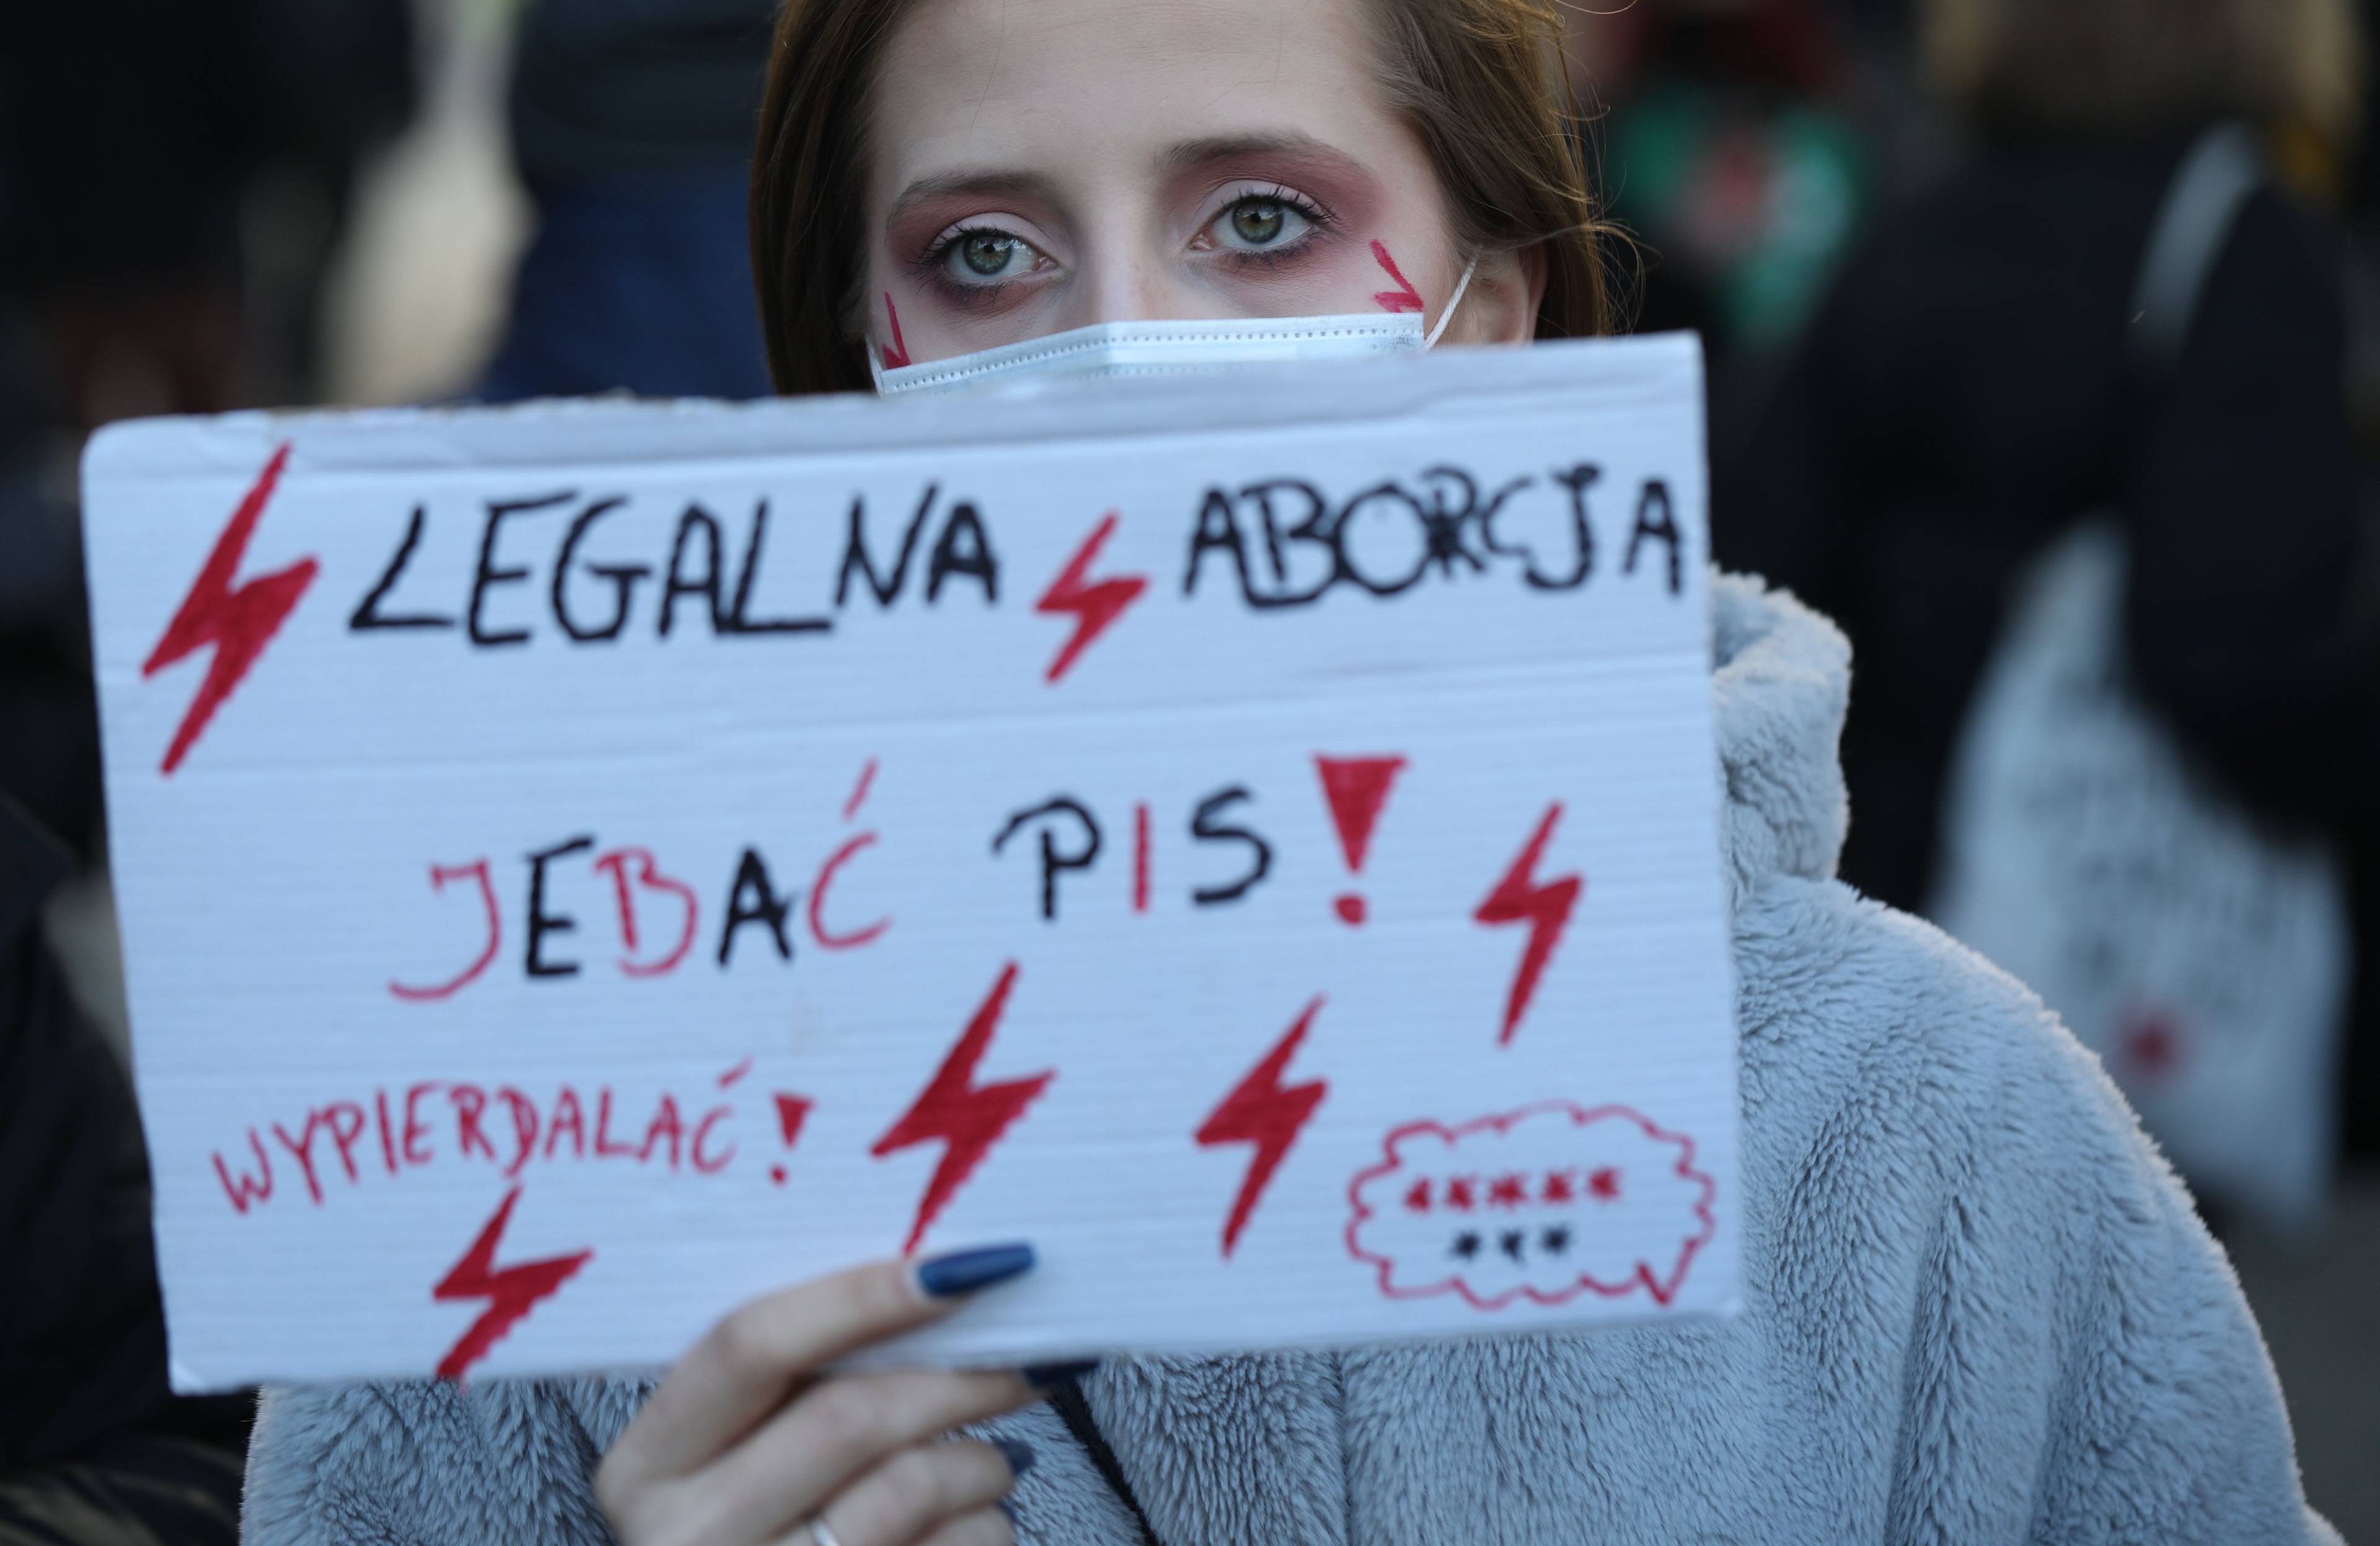 Uczestniczka protestu trzyma na wysokości twarzy kartkę z napisami Legalna aborcja, jebać PiS,wypierdalać i ośmioma gwiazdkami. Gniew kobiet